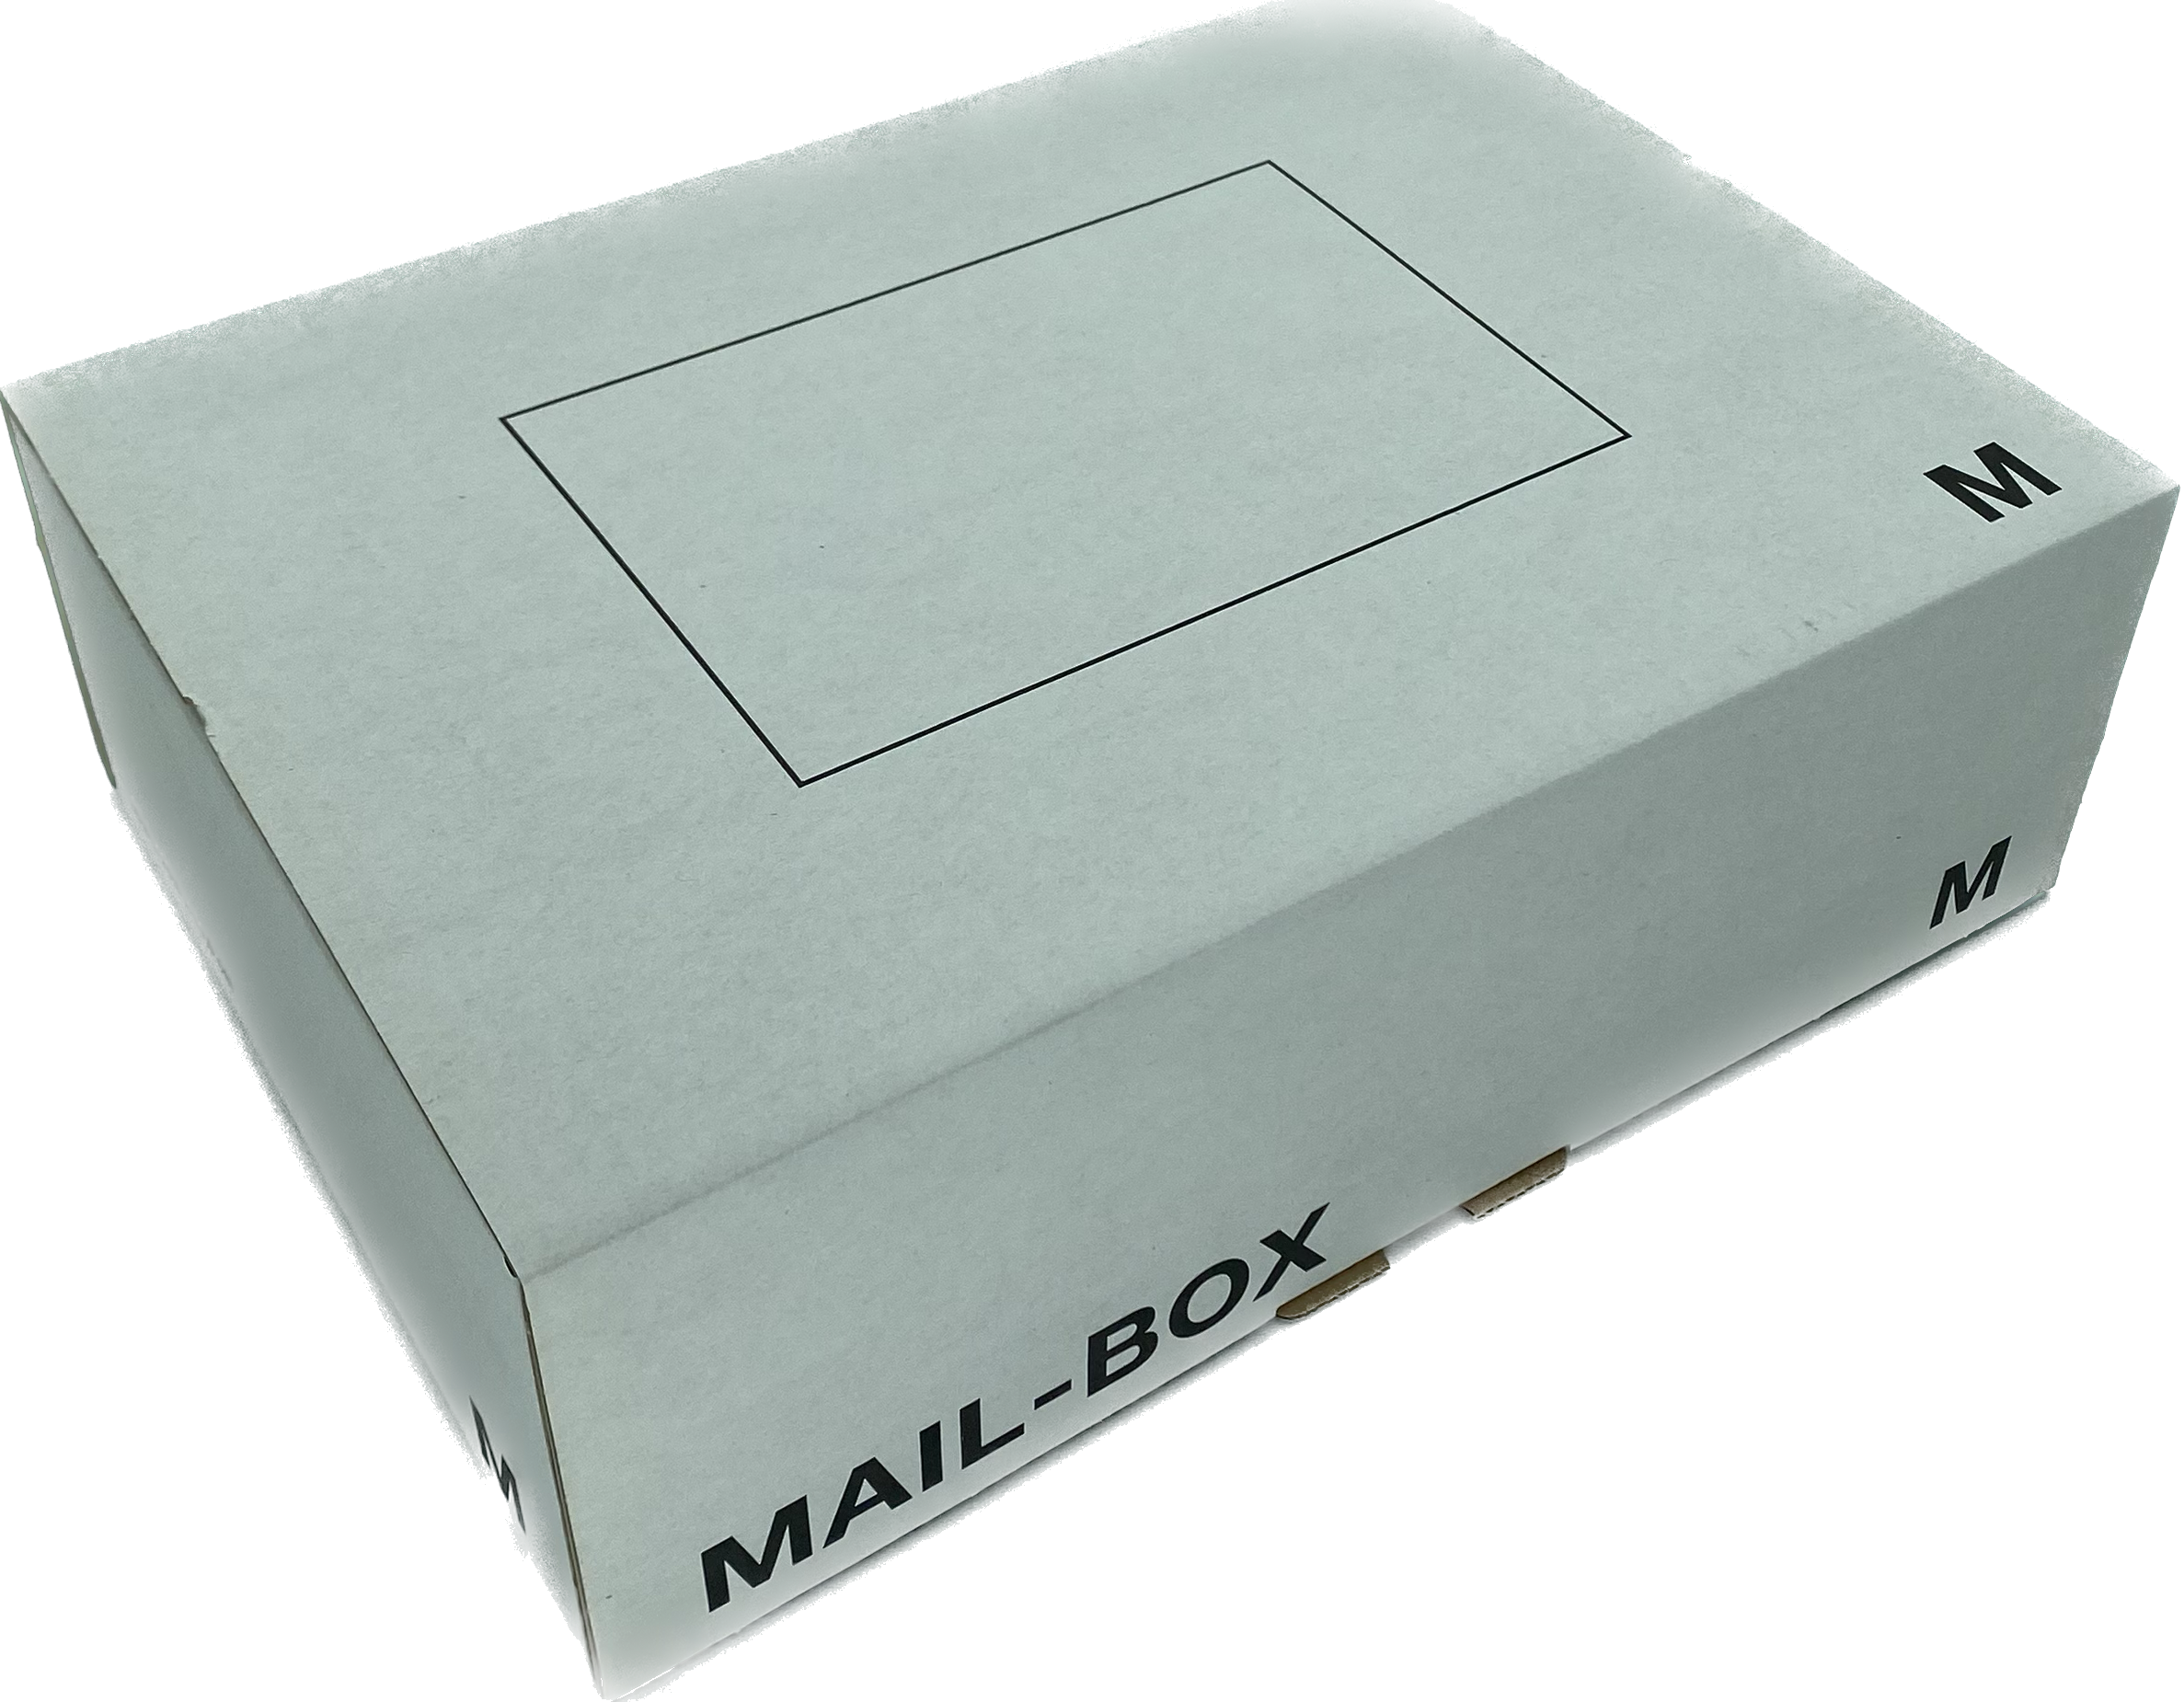 Mailbox-Karton M, 331x241x104 mm, weiß, DIN C4